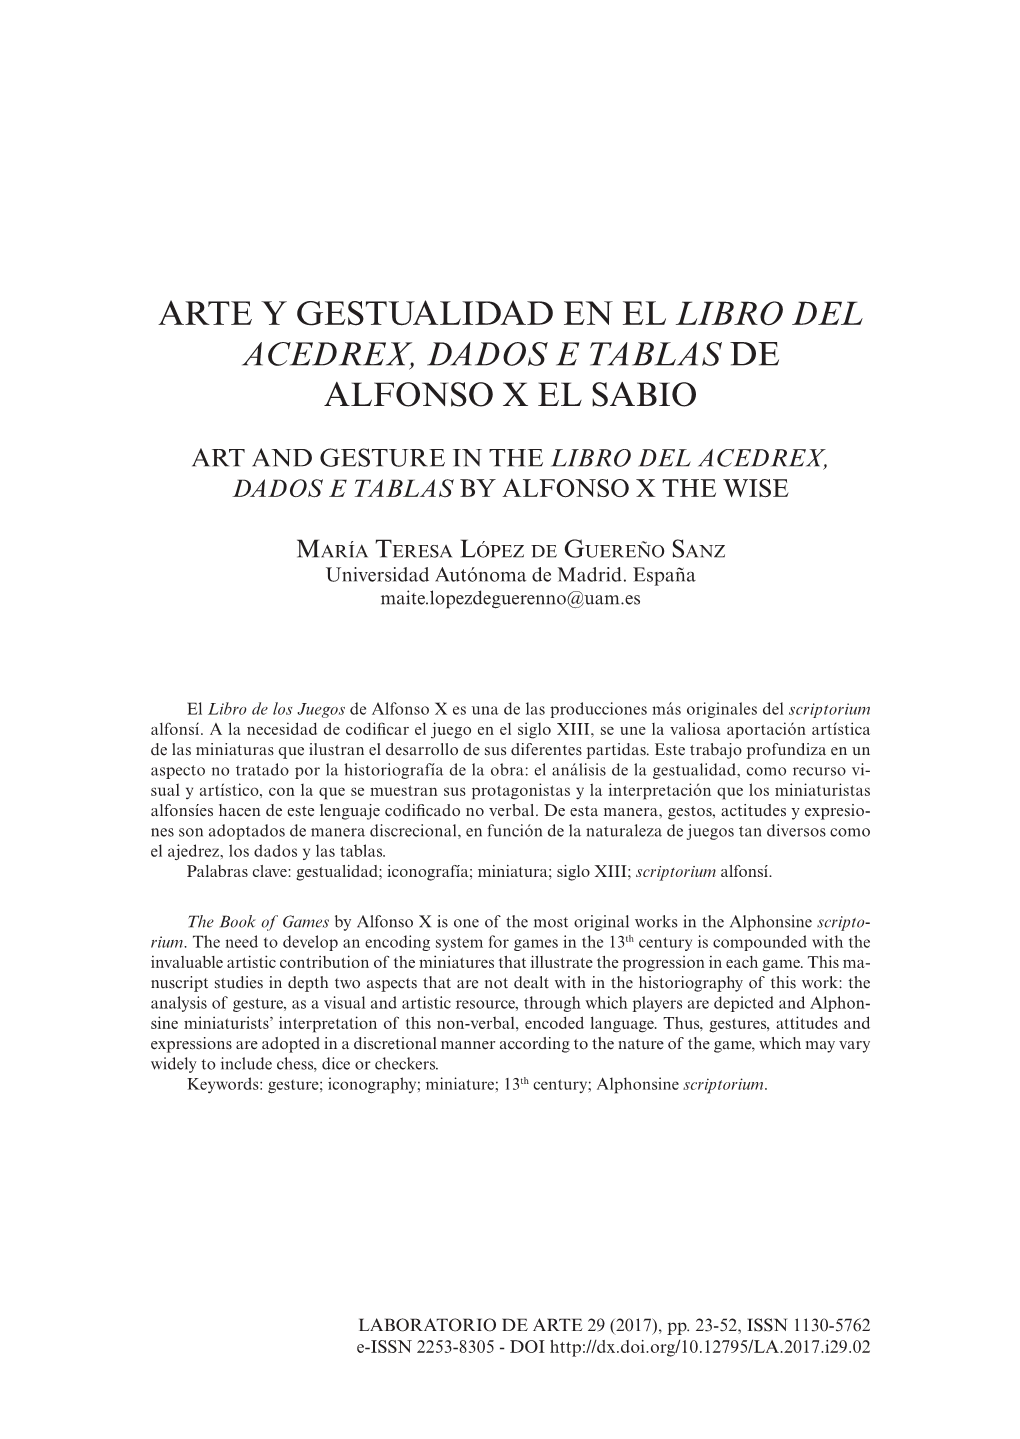 Arte Y Gestualidad En El Libro Del Acedrex, Dados E Tablas De Alfonso X El Sabio